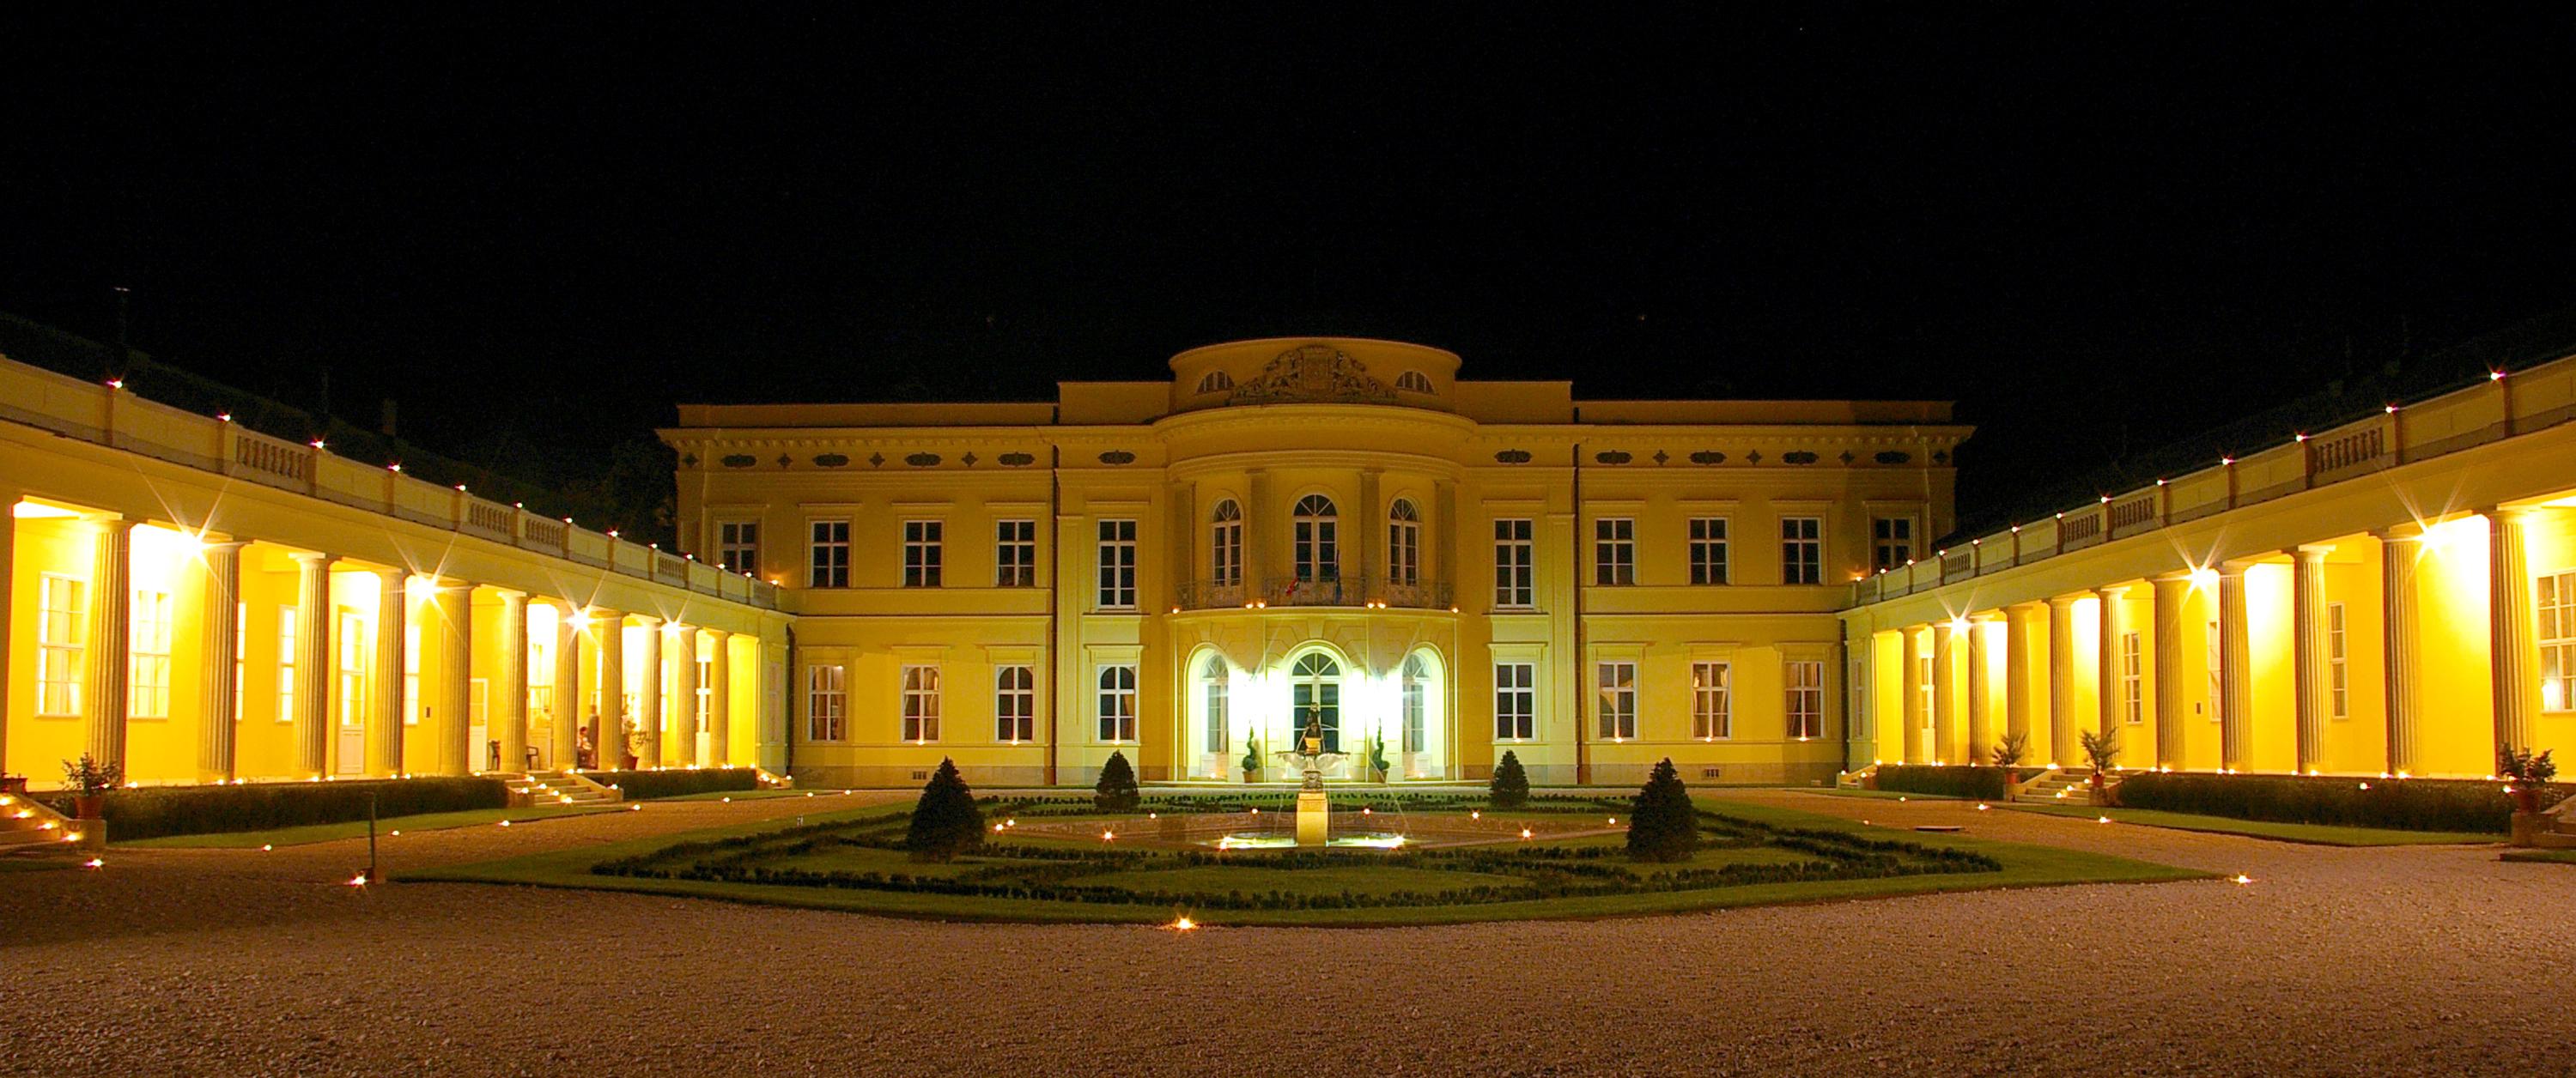 European String Quartet Festival, Károlyi Castle, Hungary, 25 - 27 September